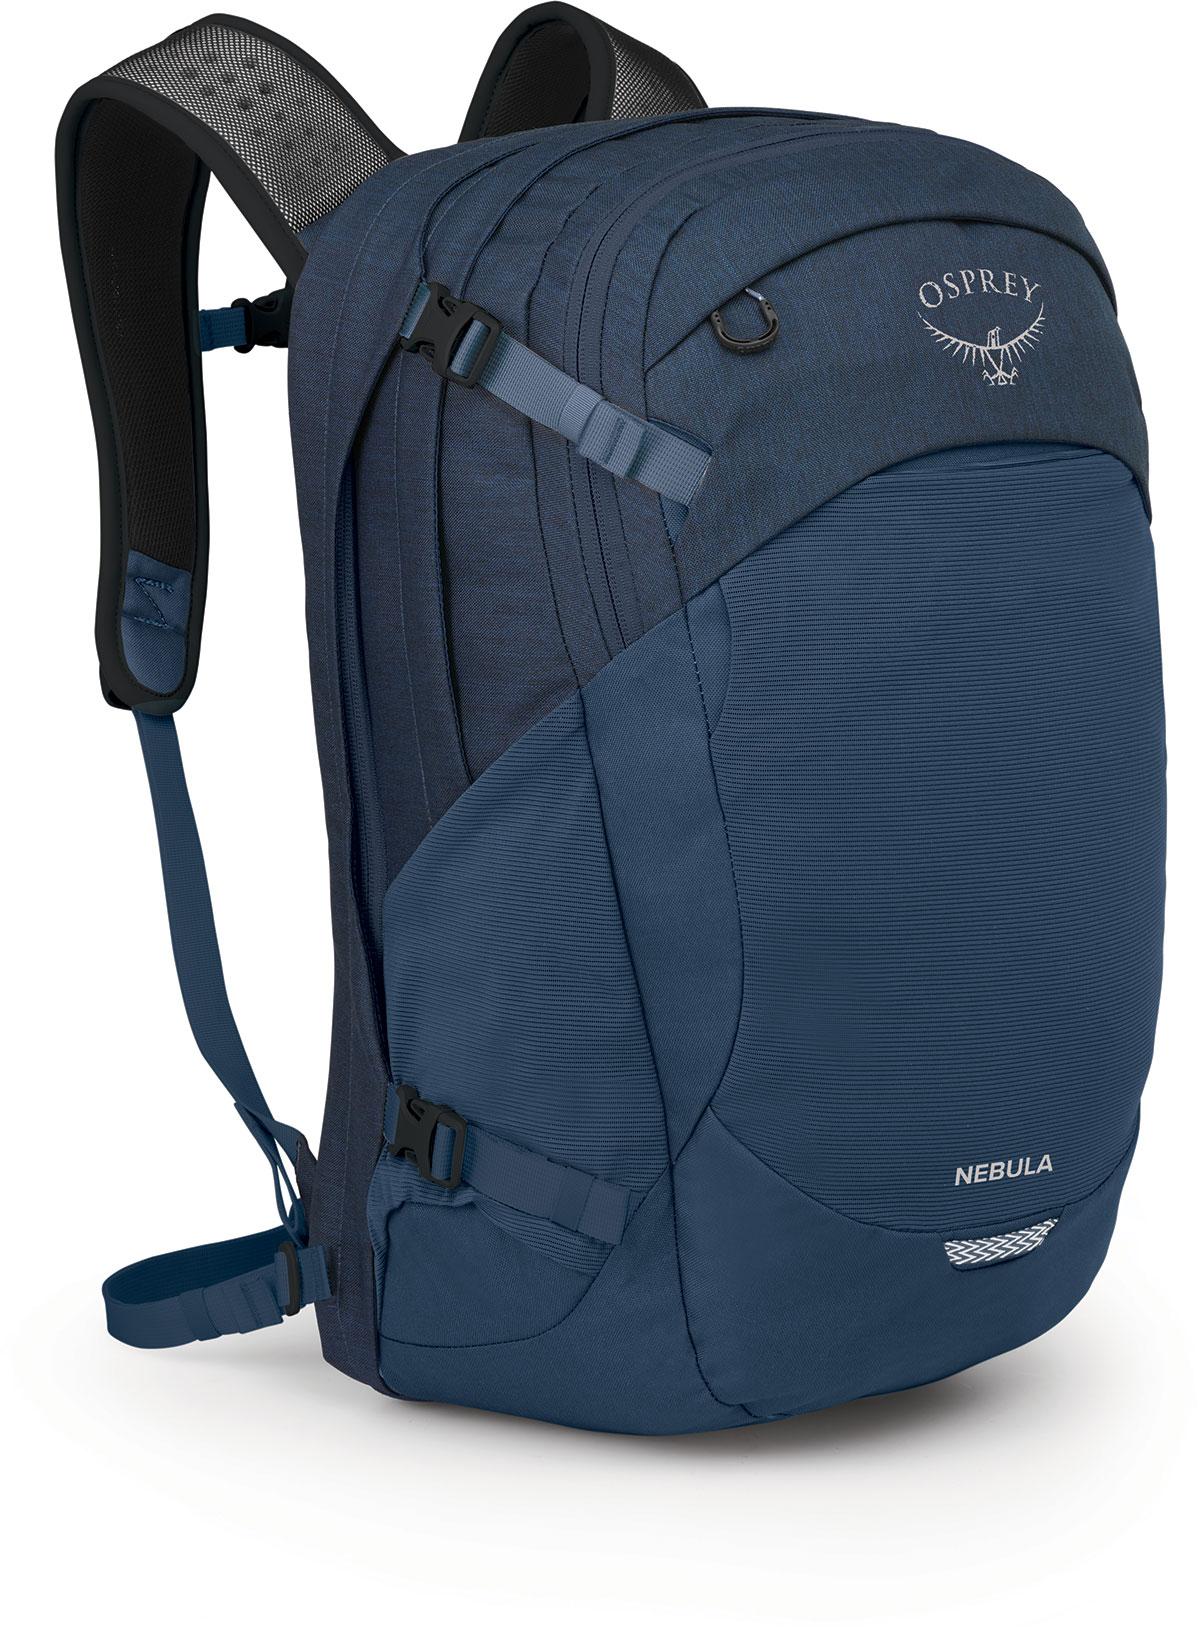 Osprey Nebula Backpack - Atlas Blue Heather